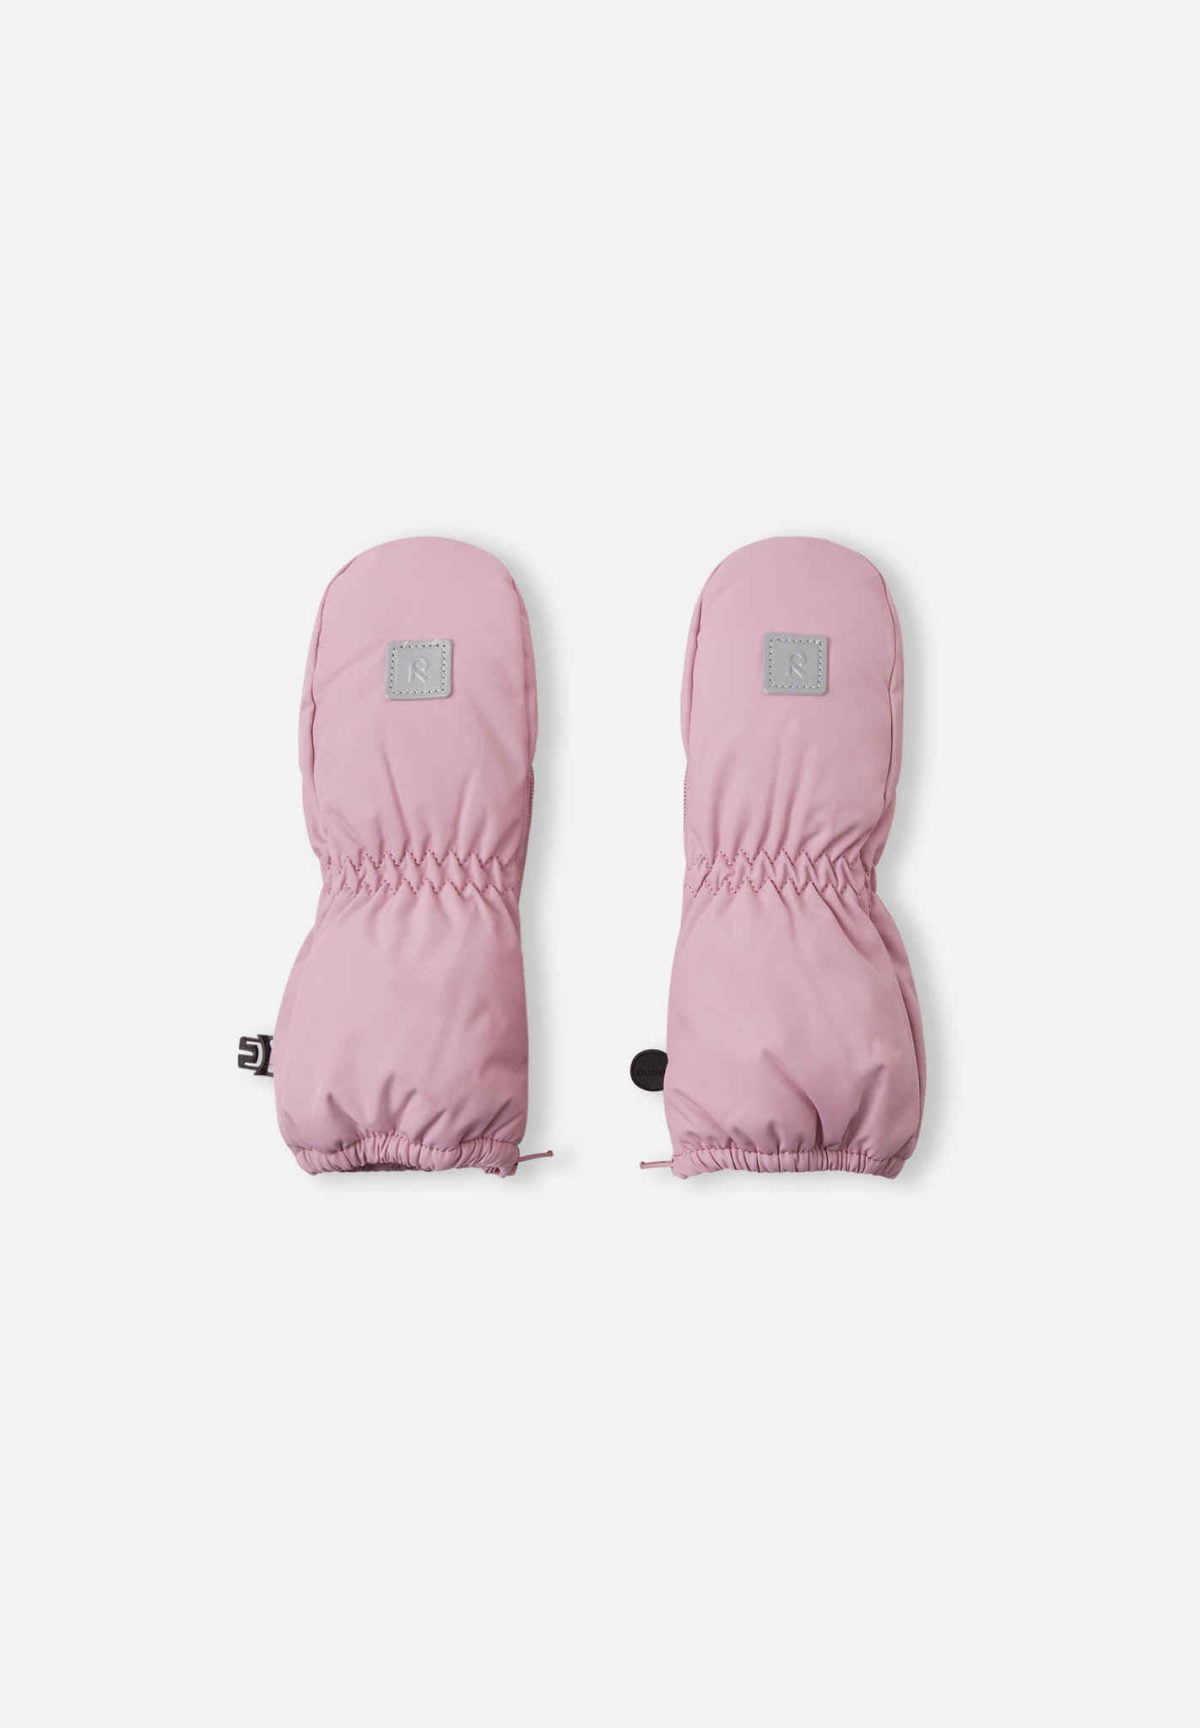 REIMA Dievčenské rukavice palčiaky Tassu ružové Winter mittens grey pink 5300115A | Welcomebaby.sk